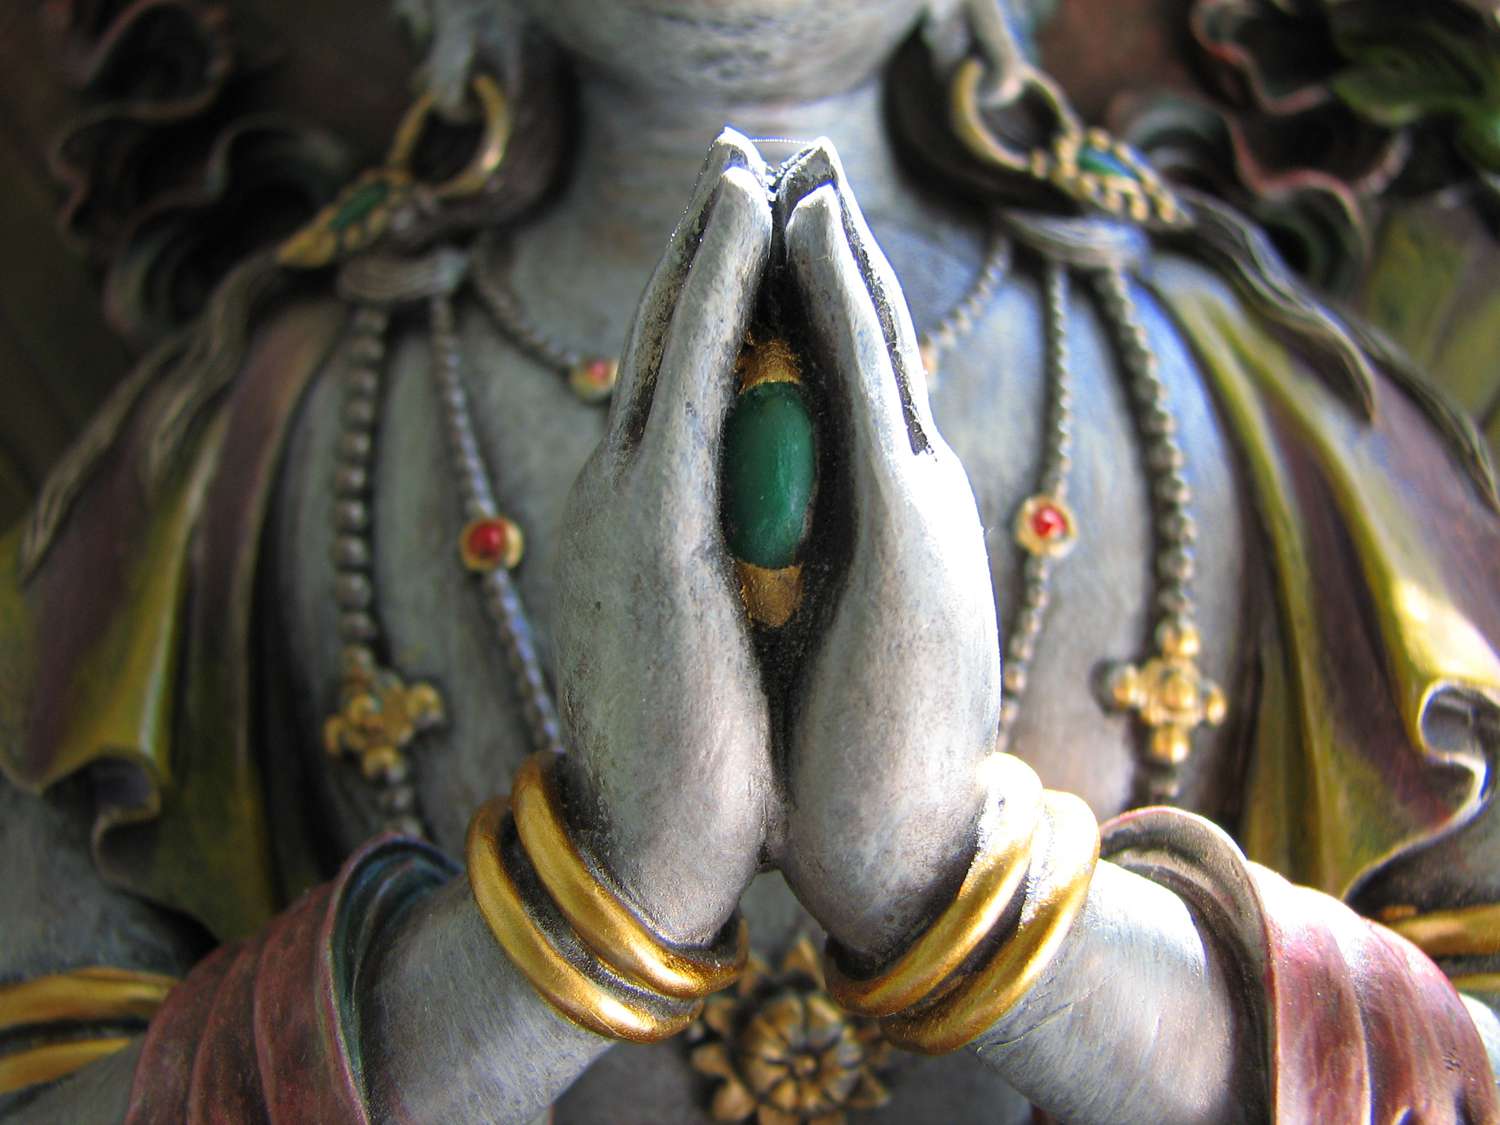 Avalokiteshvara é o Bodhisattva da Compaixão. Em sua manifestação com quatro braços, ele segura a Joia da Realização dos Desejos entre as palmas das mãos enquanto medita sobre a liberação de todos os seres. Em sua forma feminina, ele é Tara ou Kwan Yin